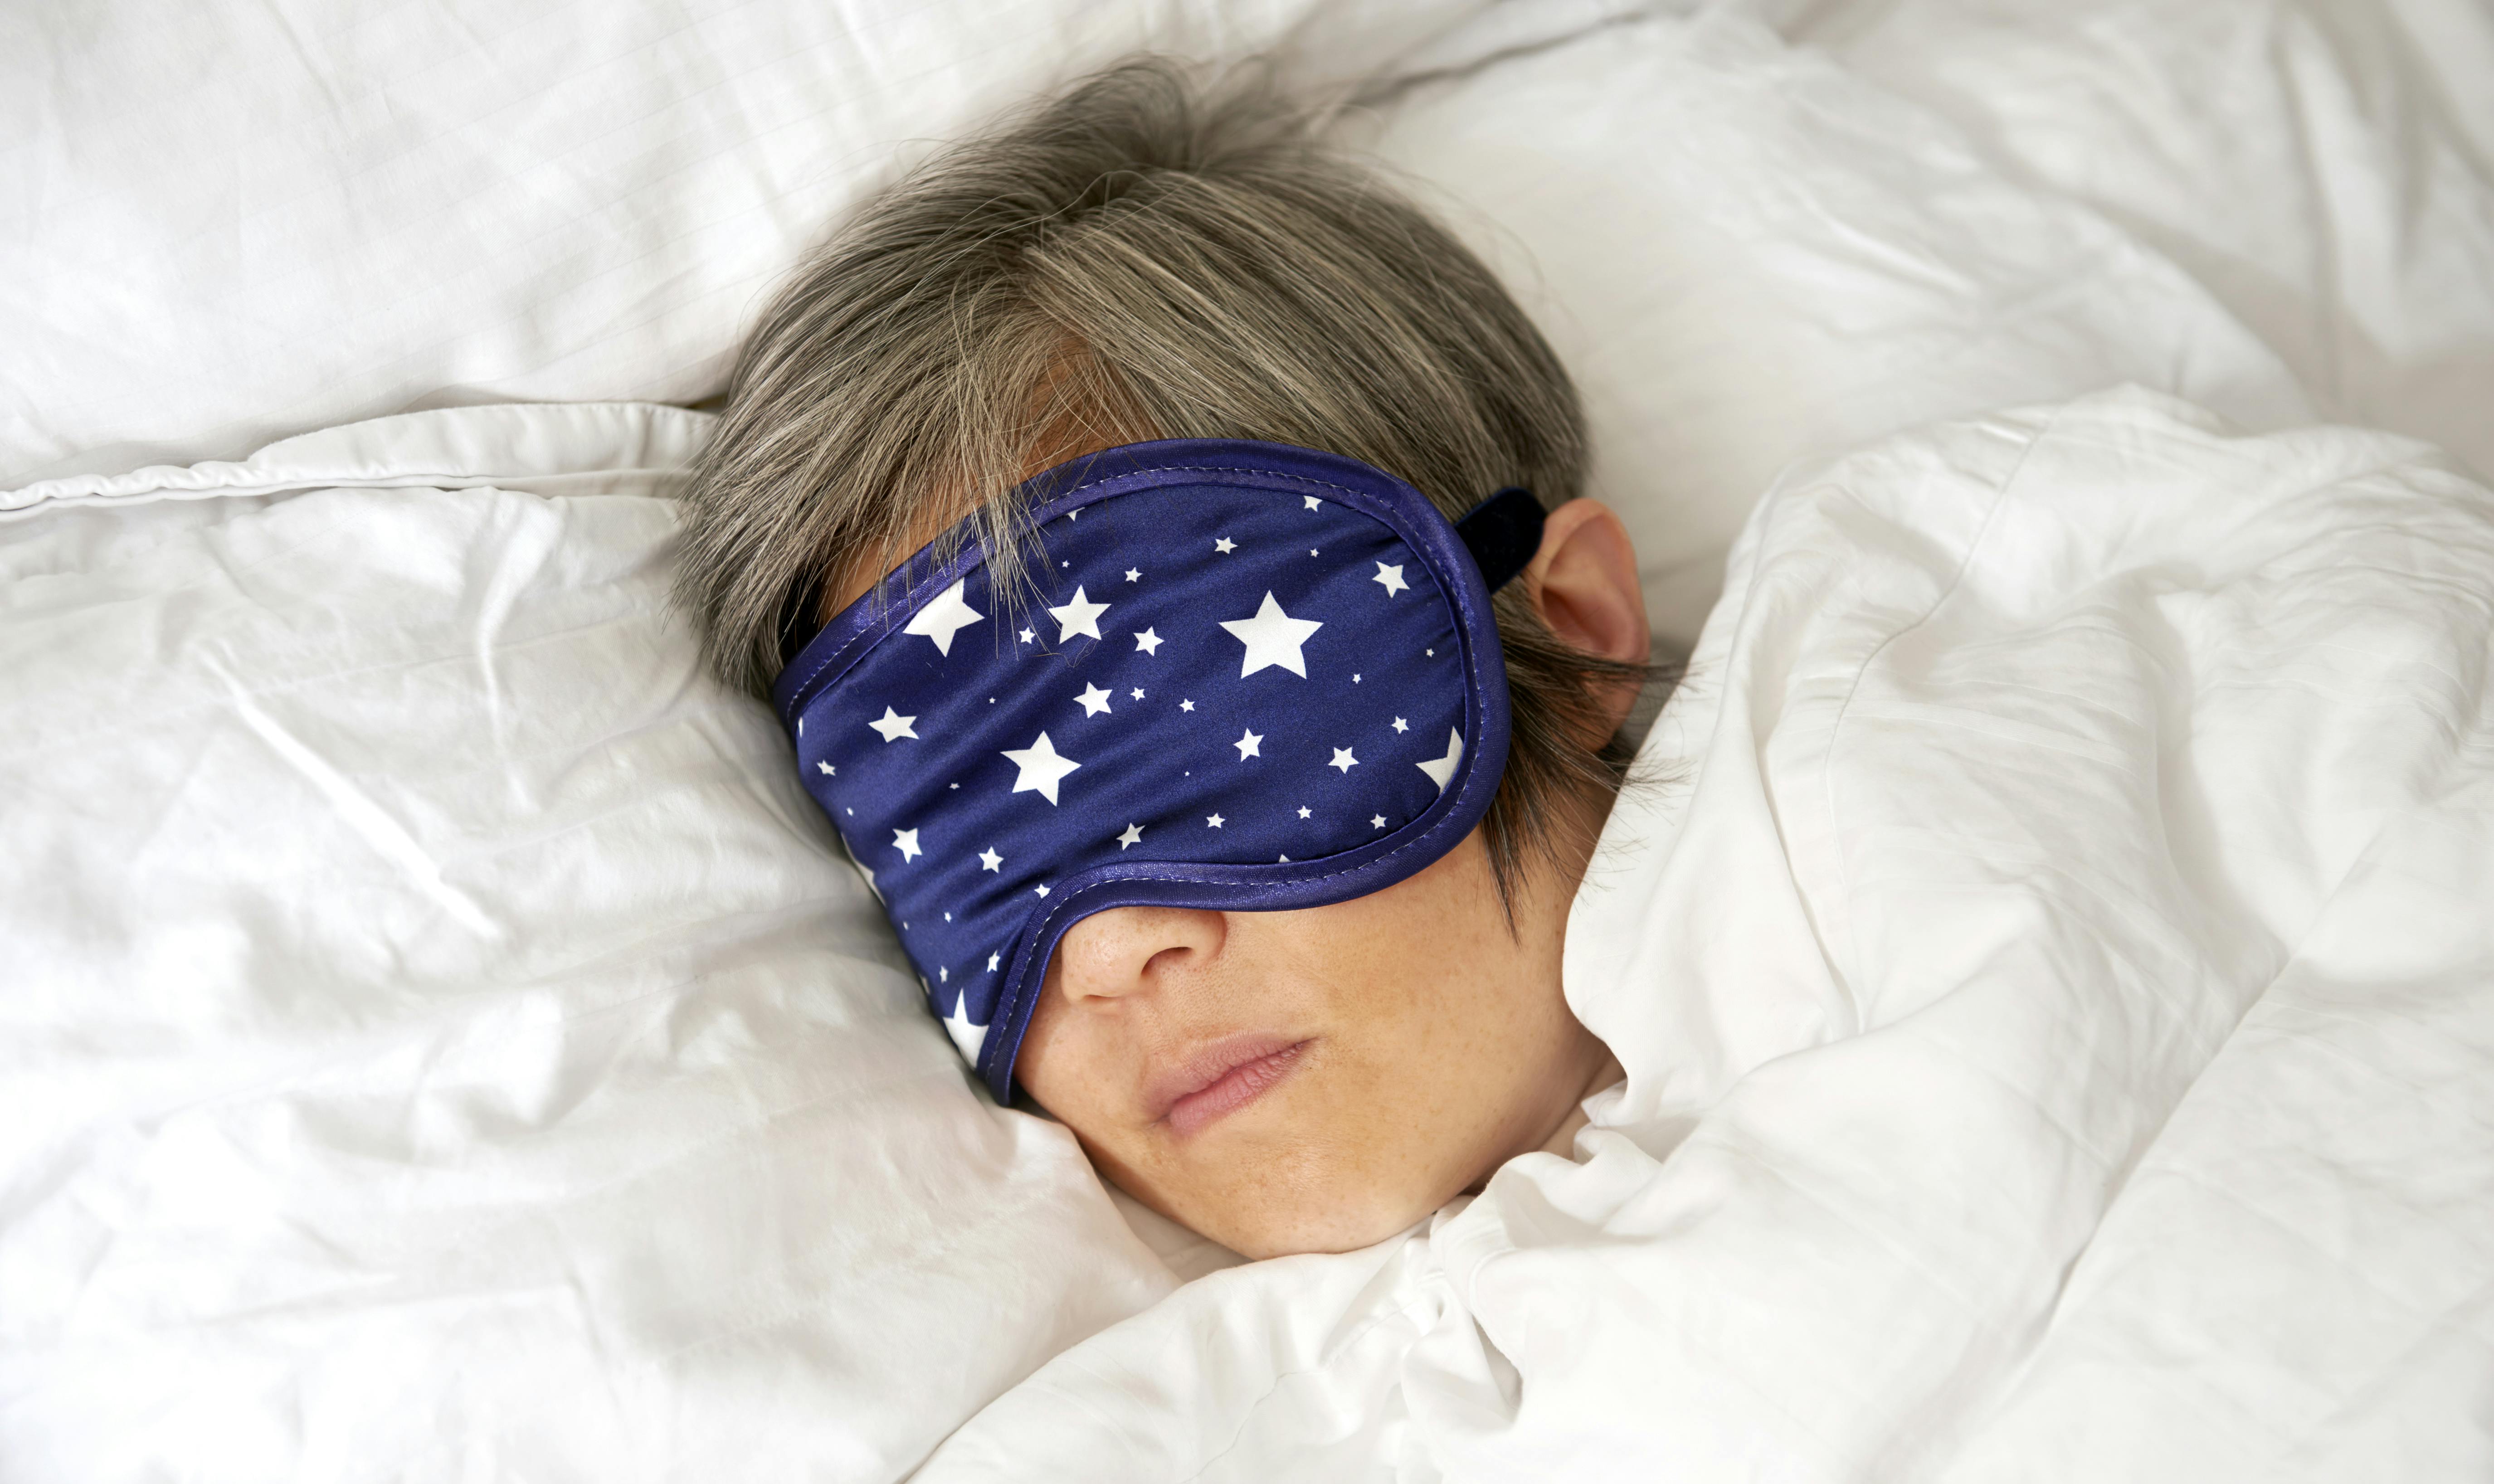 Eye Mask Travel Beauty Sleep Bedtime Sponge Cover Blindfold Blinder Blackout UK 